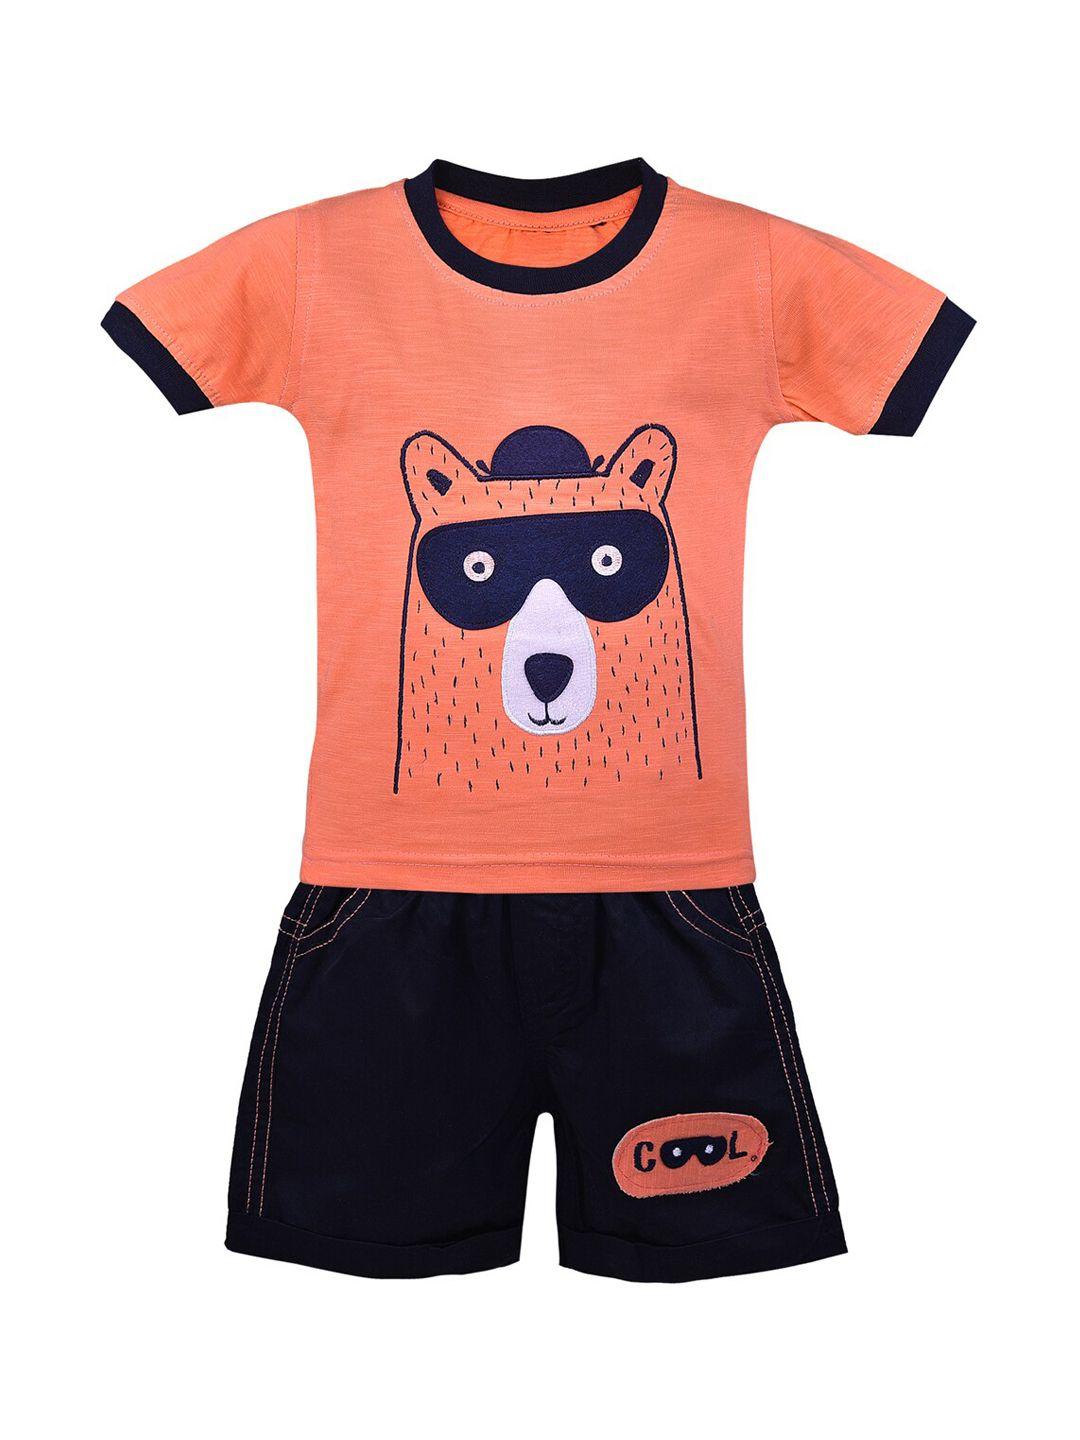 wish karo kids orange & black printed t-shirt with shorts